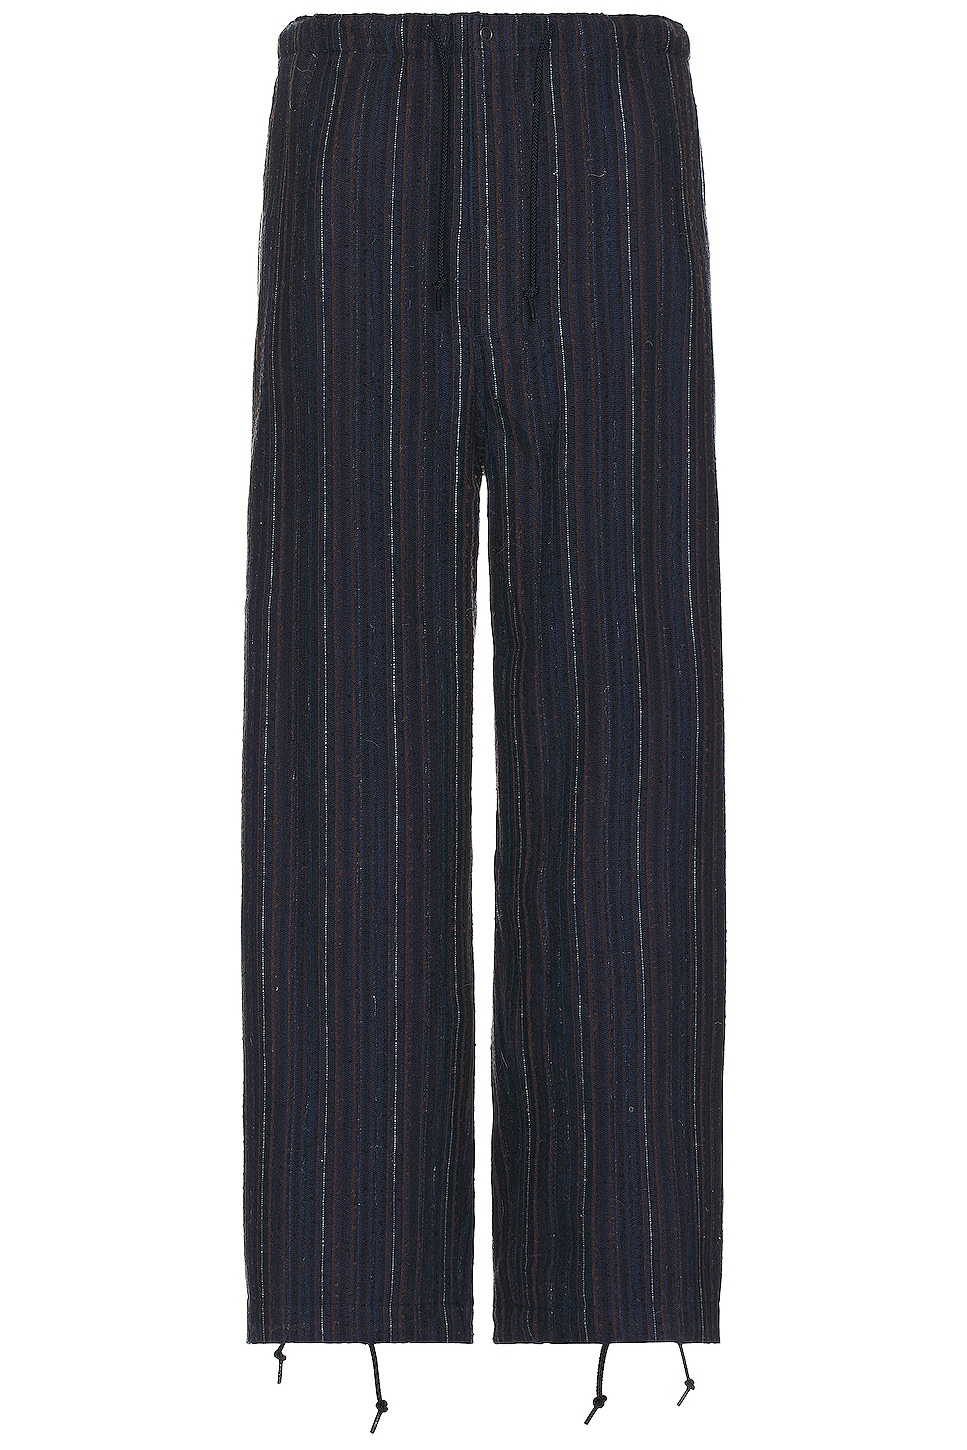 Image 1 of Beams Plus Mil Easy Pants Hickory Tweed Pant in Navy